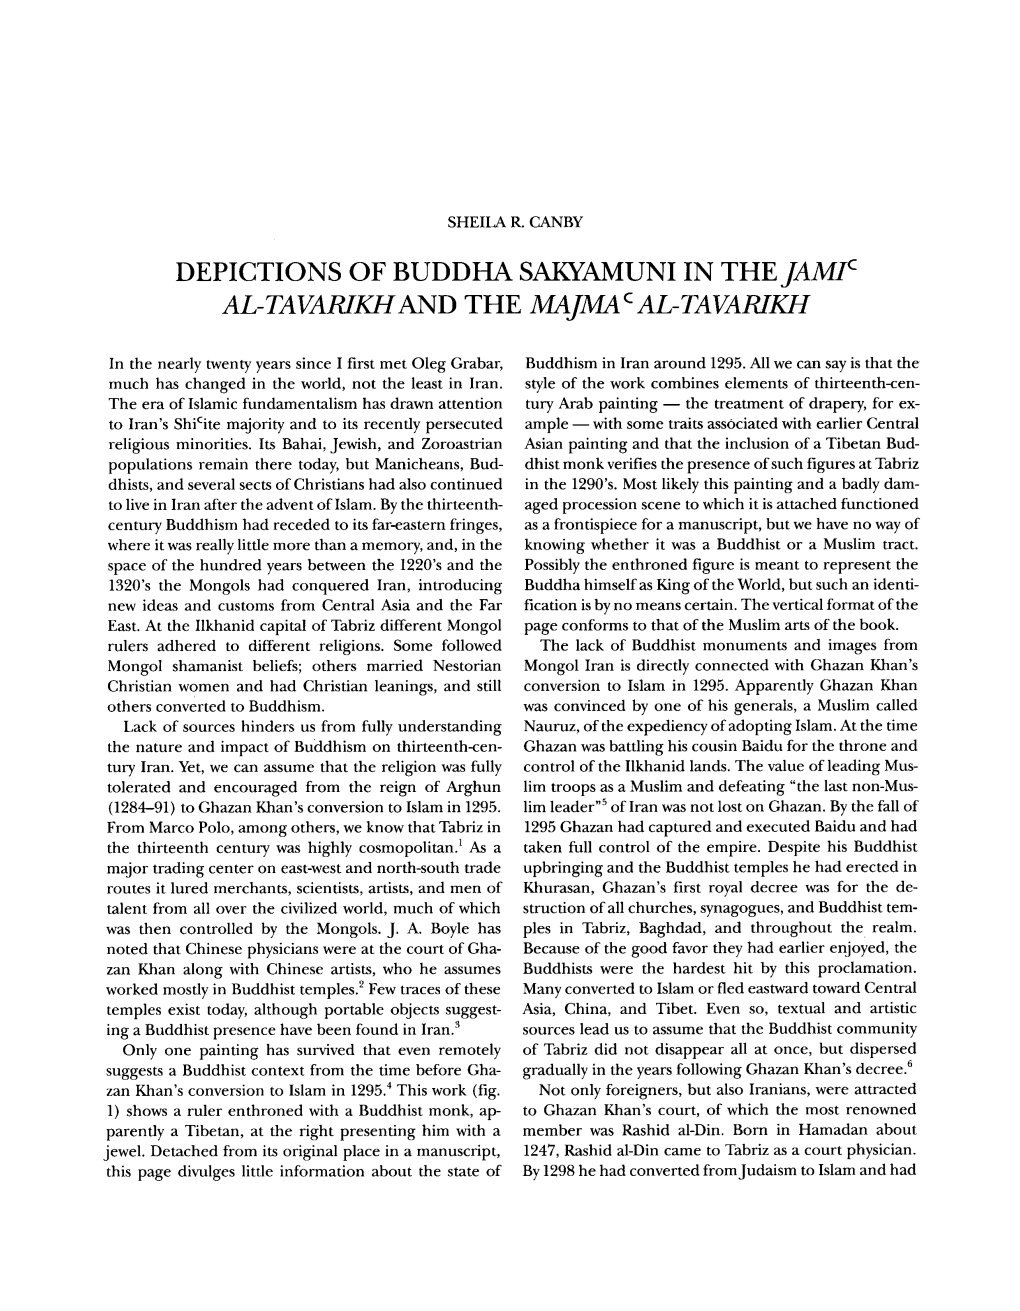 DEPICTIONS of BUDDHA SAKYAMUNI in Thejamlc AL-TAVARIKHAND the MAJMA C AL-TAVARIKH